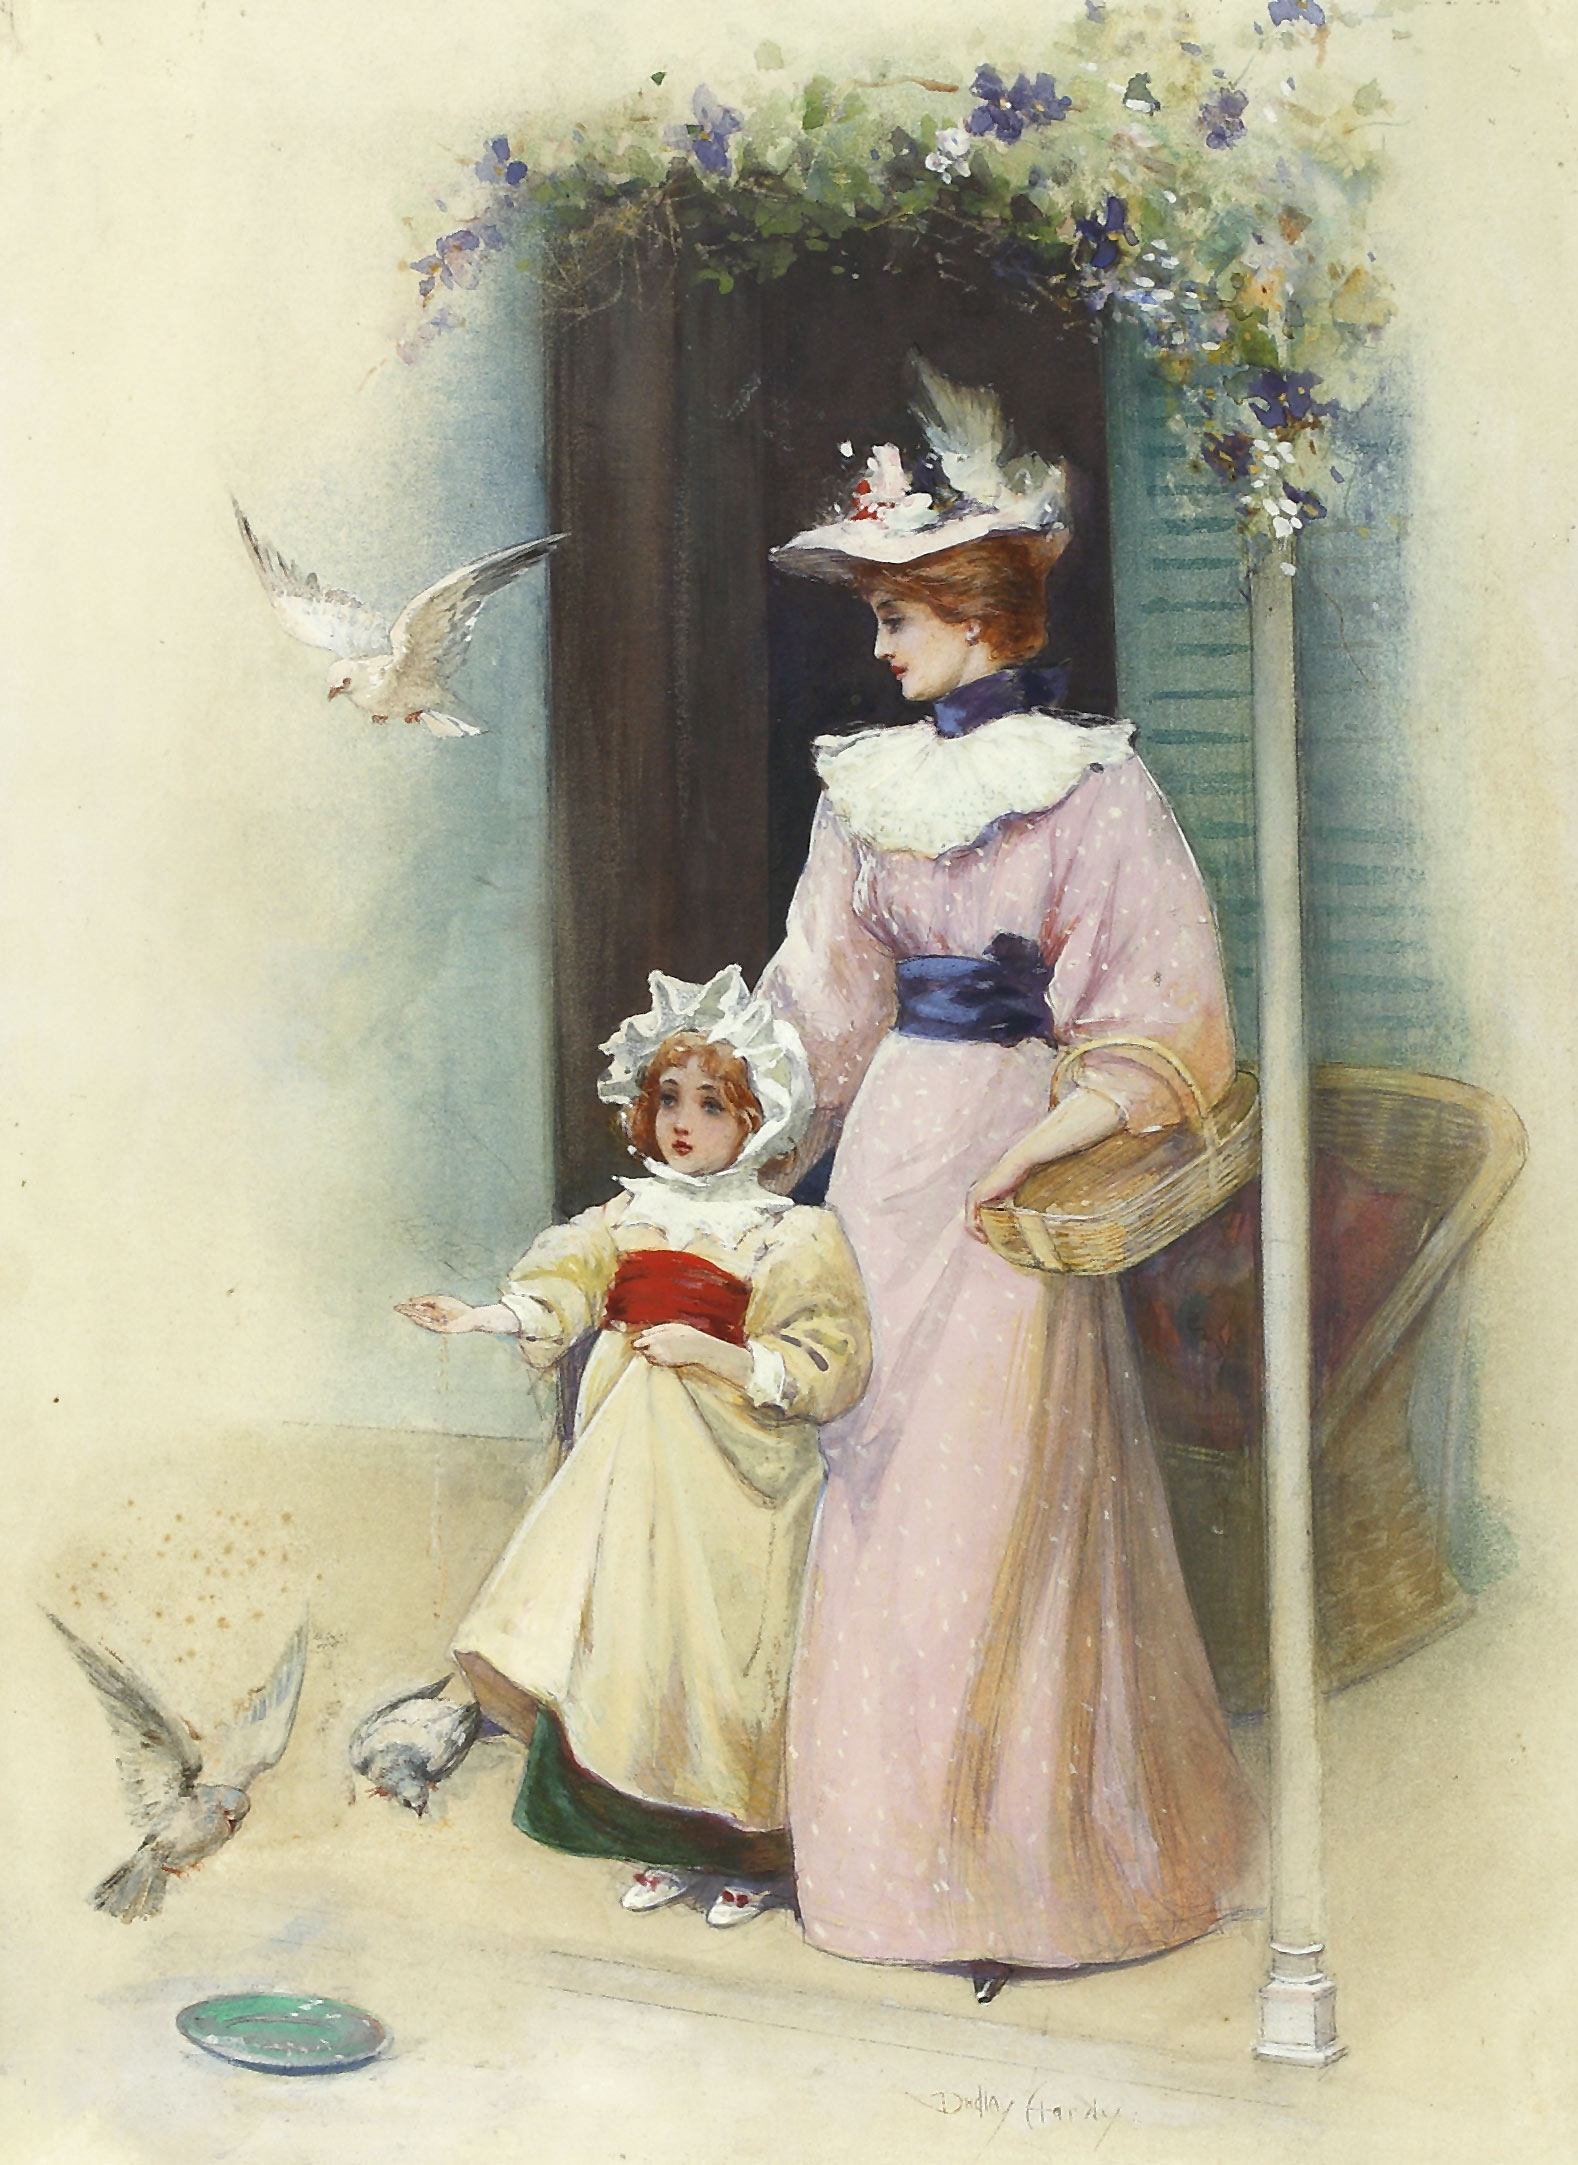 Auktionshaus Quentin Berlin Hardy  Dudley (1867 Sheffield - 1922 London) / Junge Mutter mit MÃ¤dchen beim Tauben fÃ¼ttern. Aquarell. 34 x 25 cm. Signiert. Im Passepartout  un